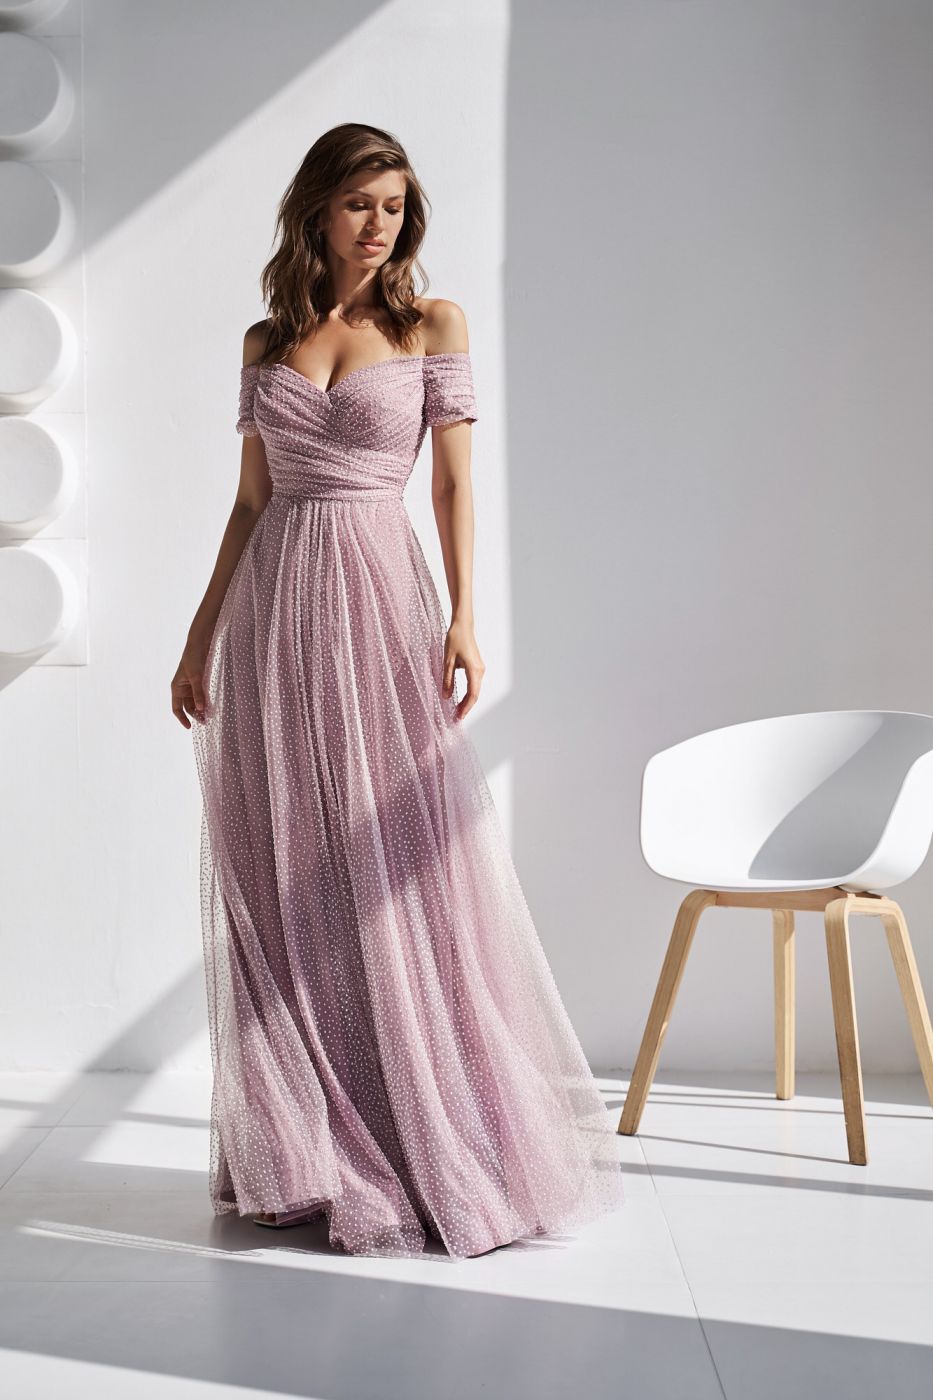 Пышное платье с многослойной юбкой, корсетом и приспущенными рукавами розового цвета Арт. 553